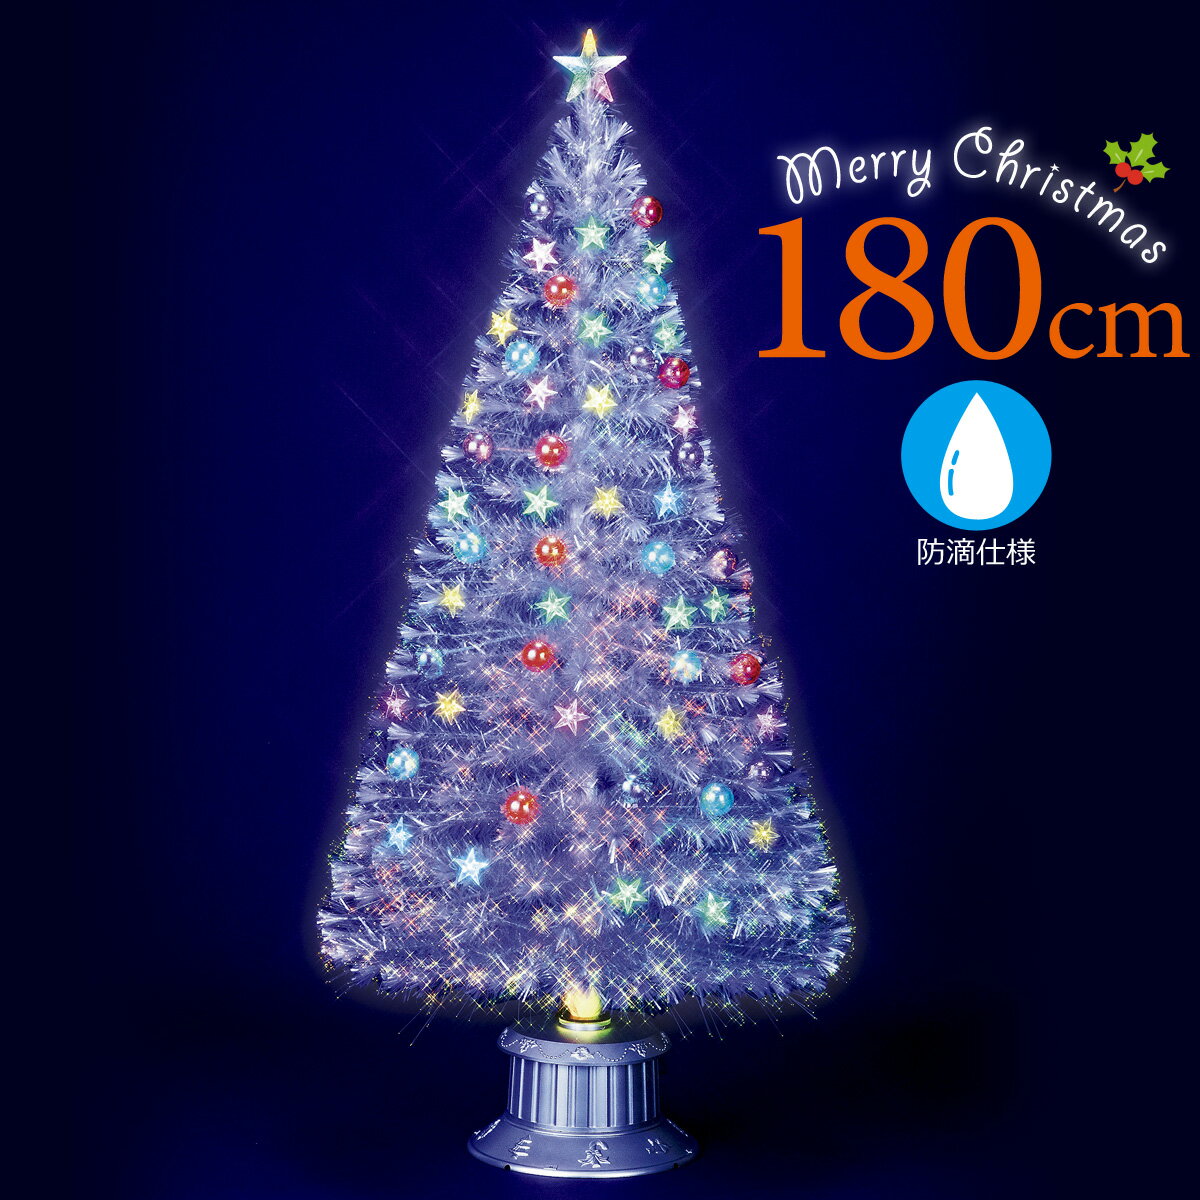 ファイバーツリー 180cm クリスマスツリー ファイバー 北欧 白 おしゃれ スターカット LED ...